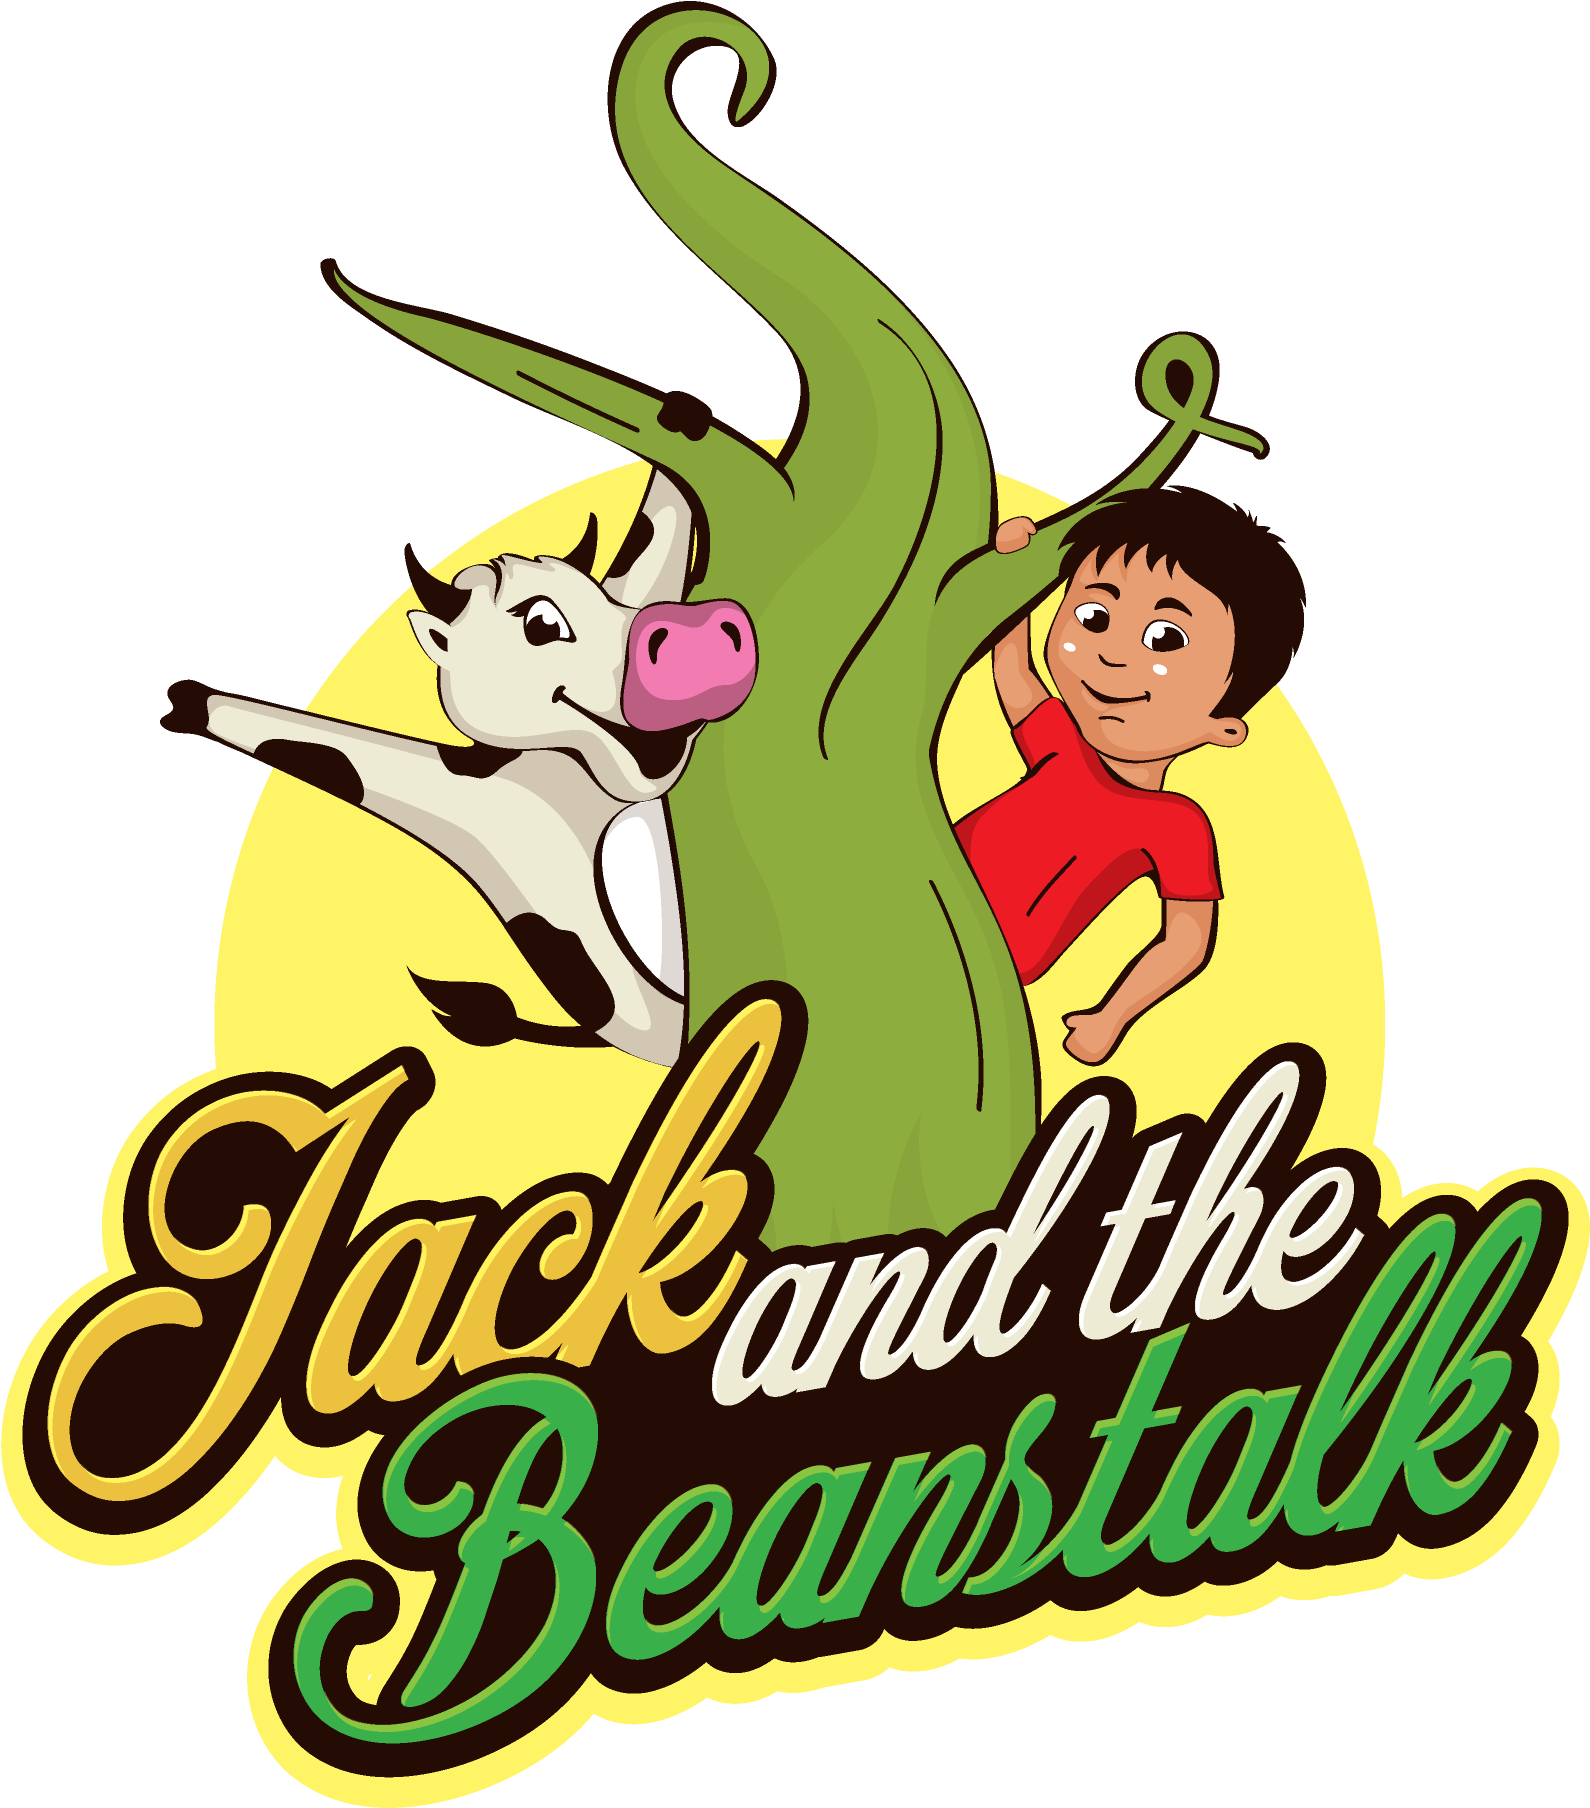 Jack And The Beanstalk - Jack And The Beanstalk (3600x2880)